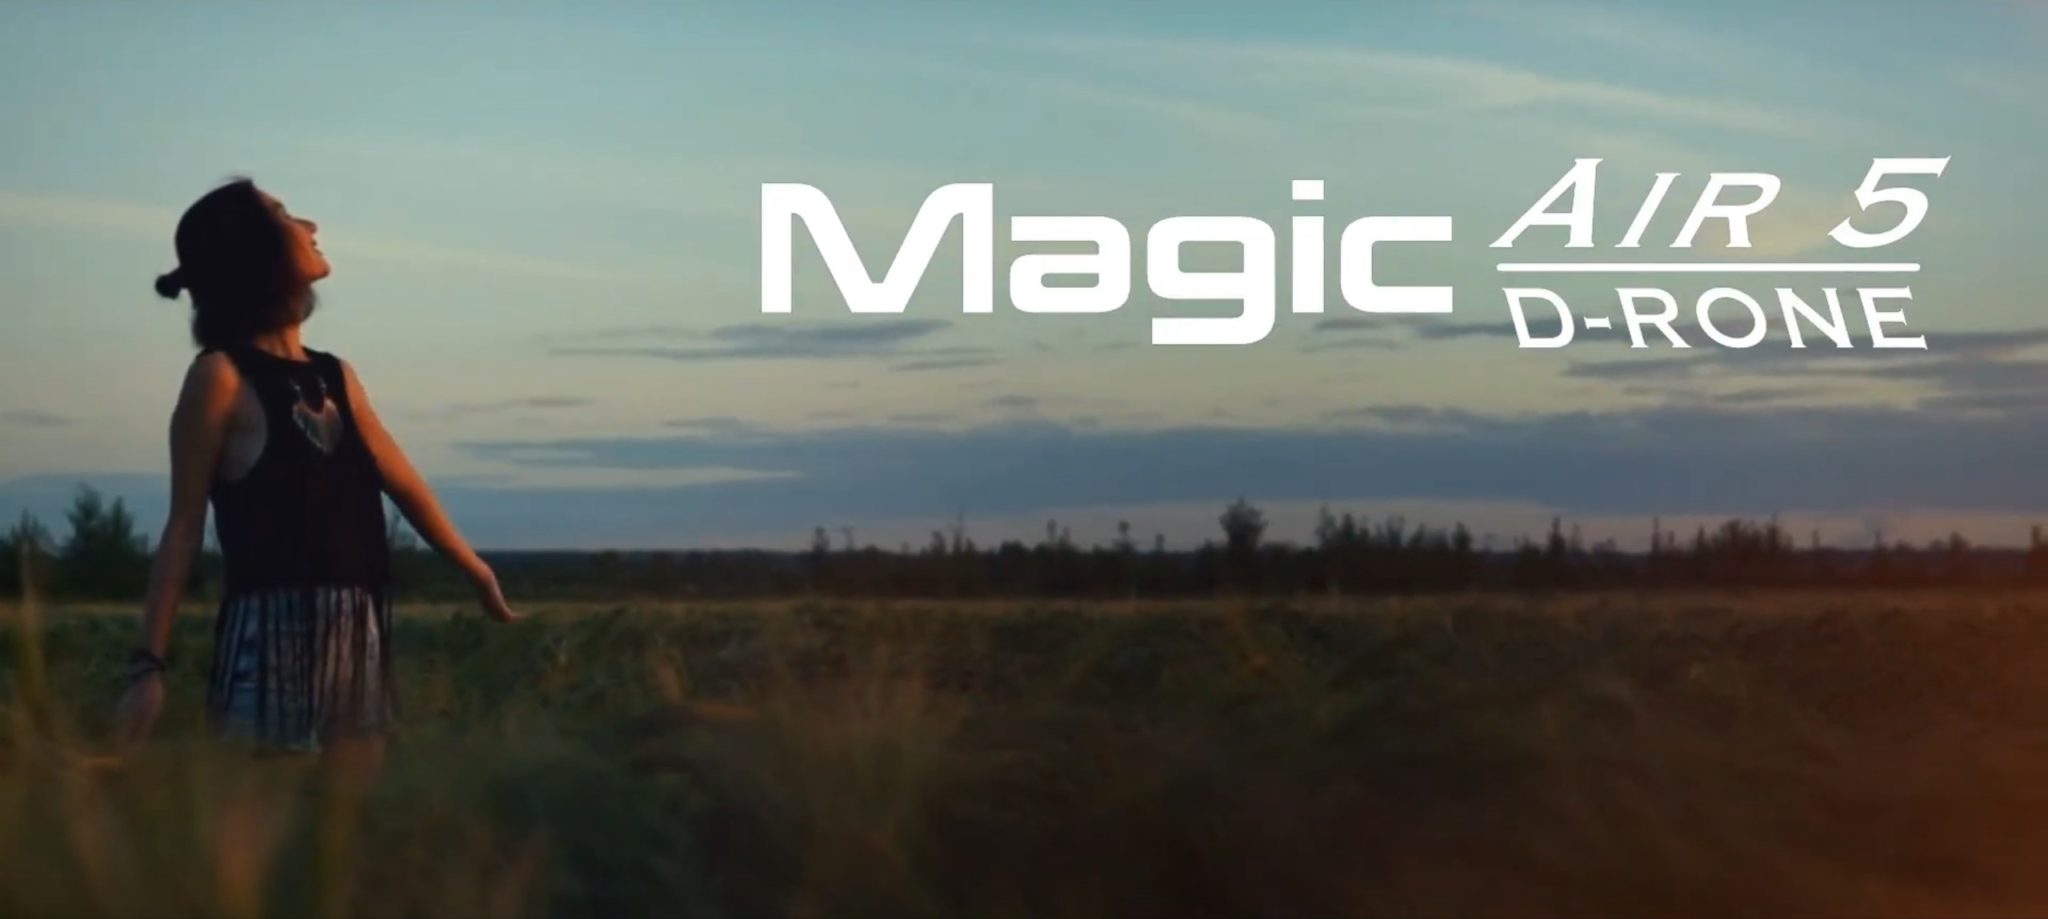 Magic air 5